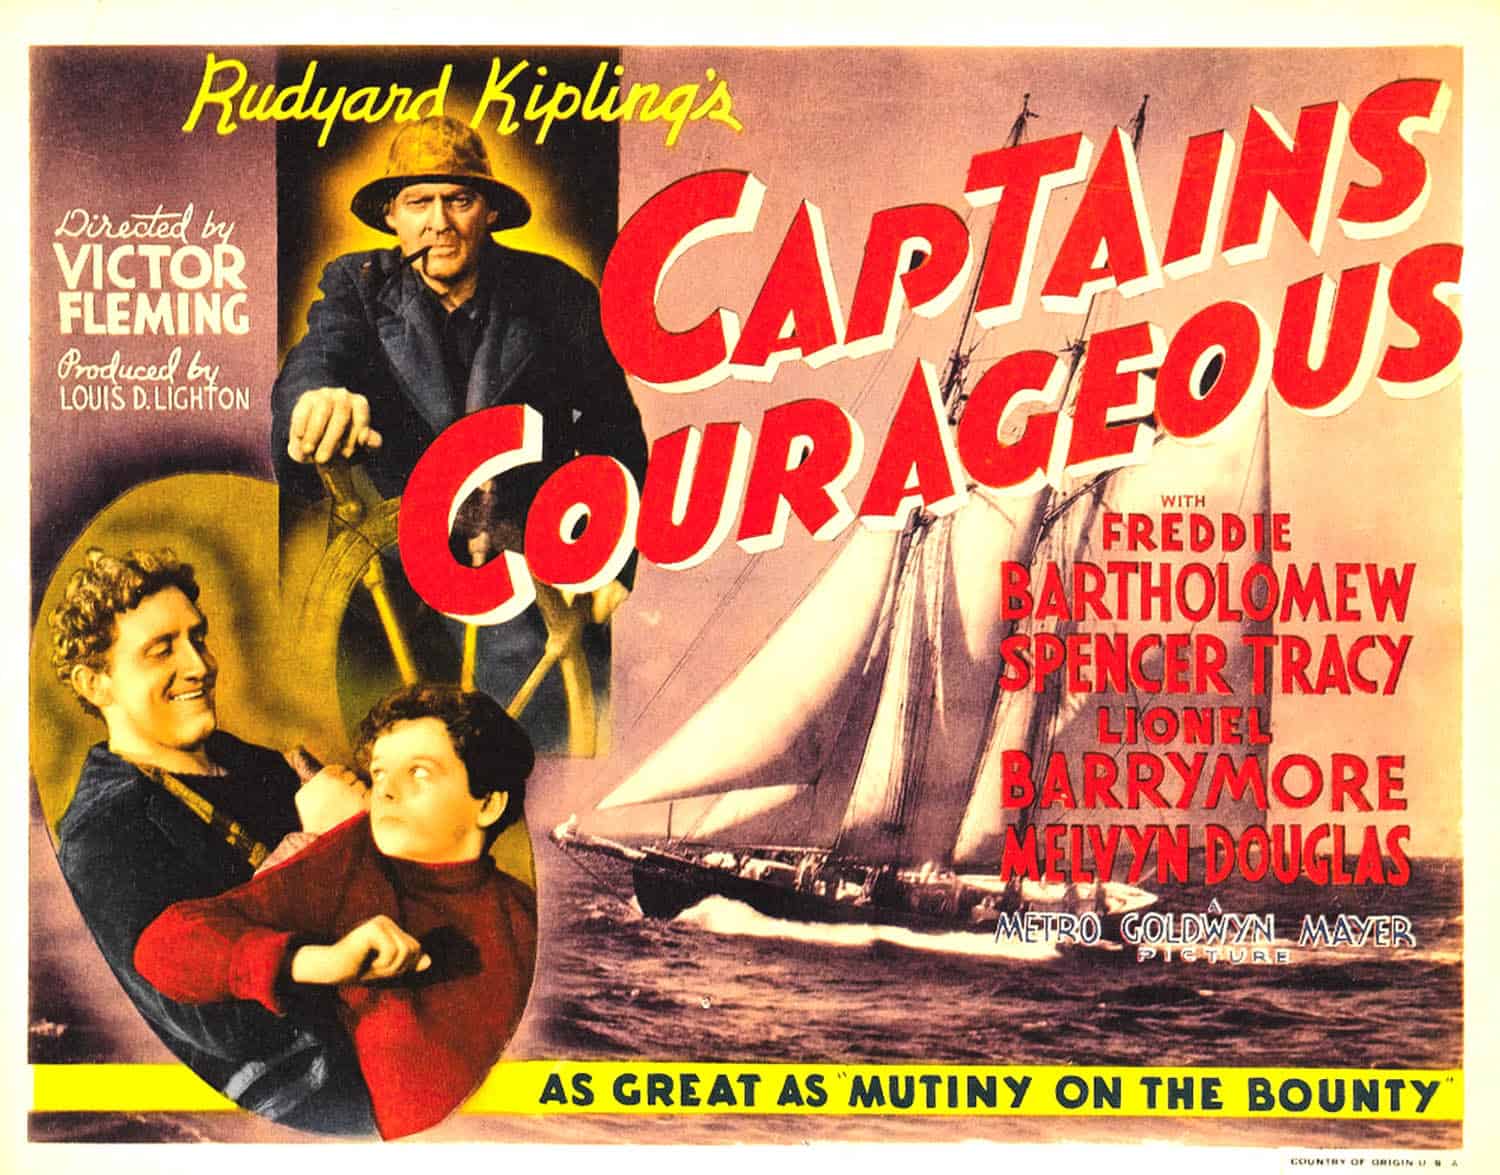 Captains Courageous (1937)